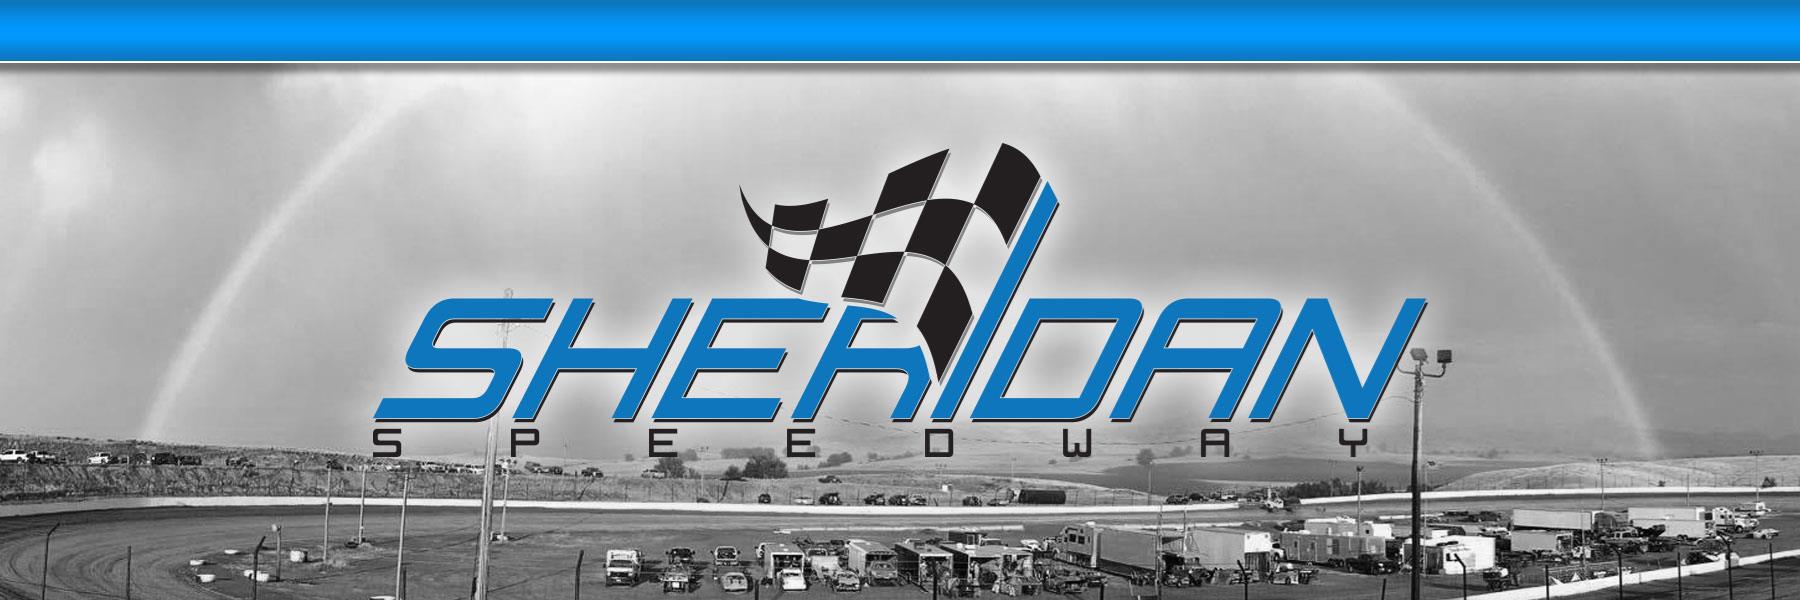 6/27/2022 - Sheridan Speedway